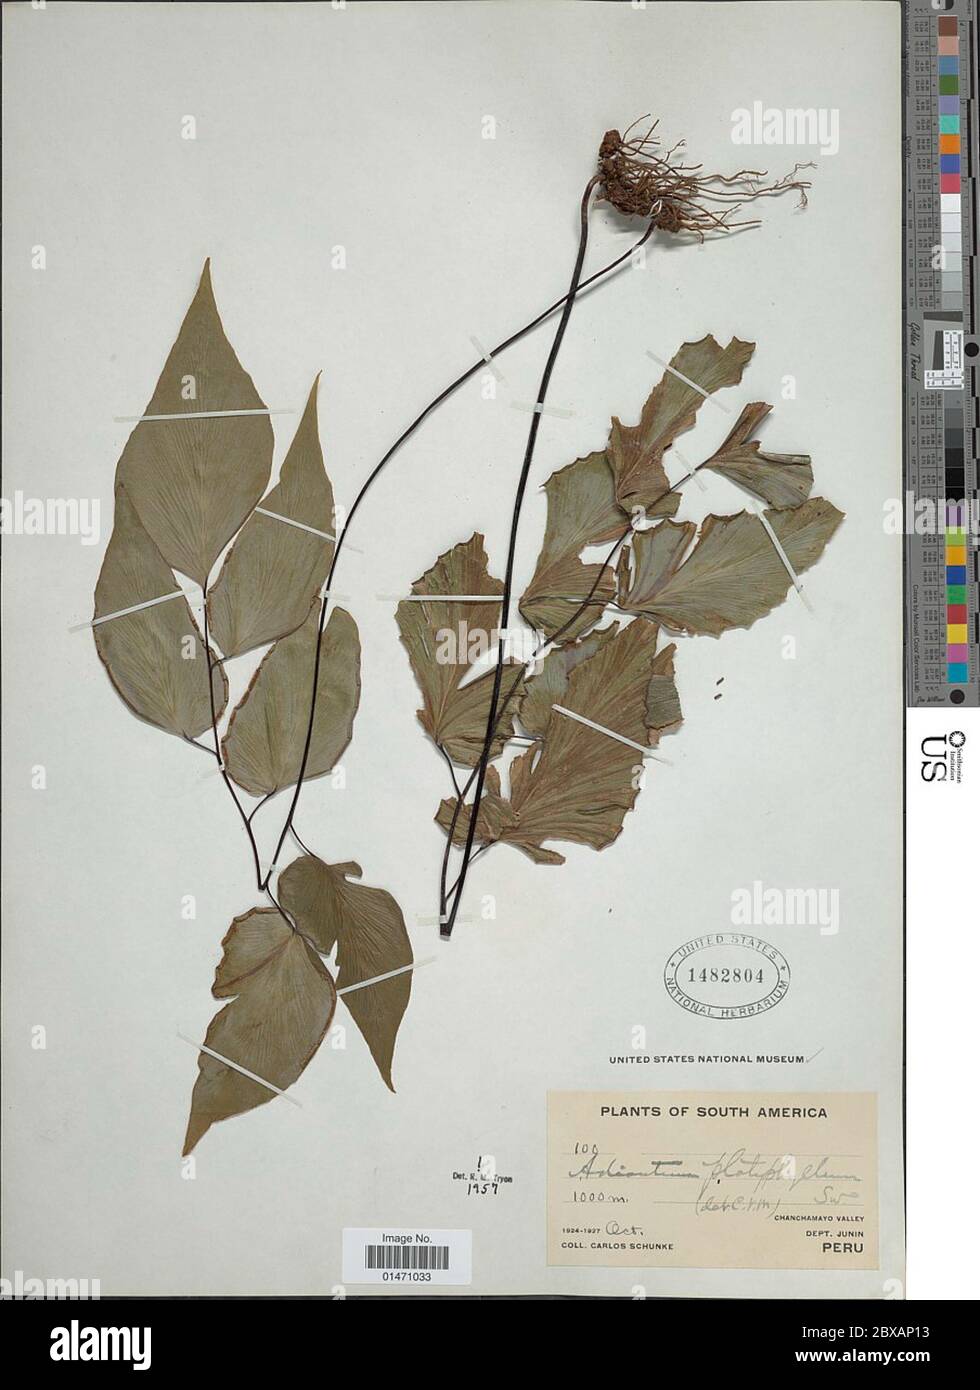 Adiantum platyphyllum Sw Adiantum platyphyllum Sw. Stock Photo